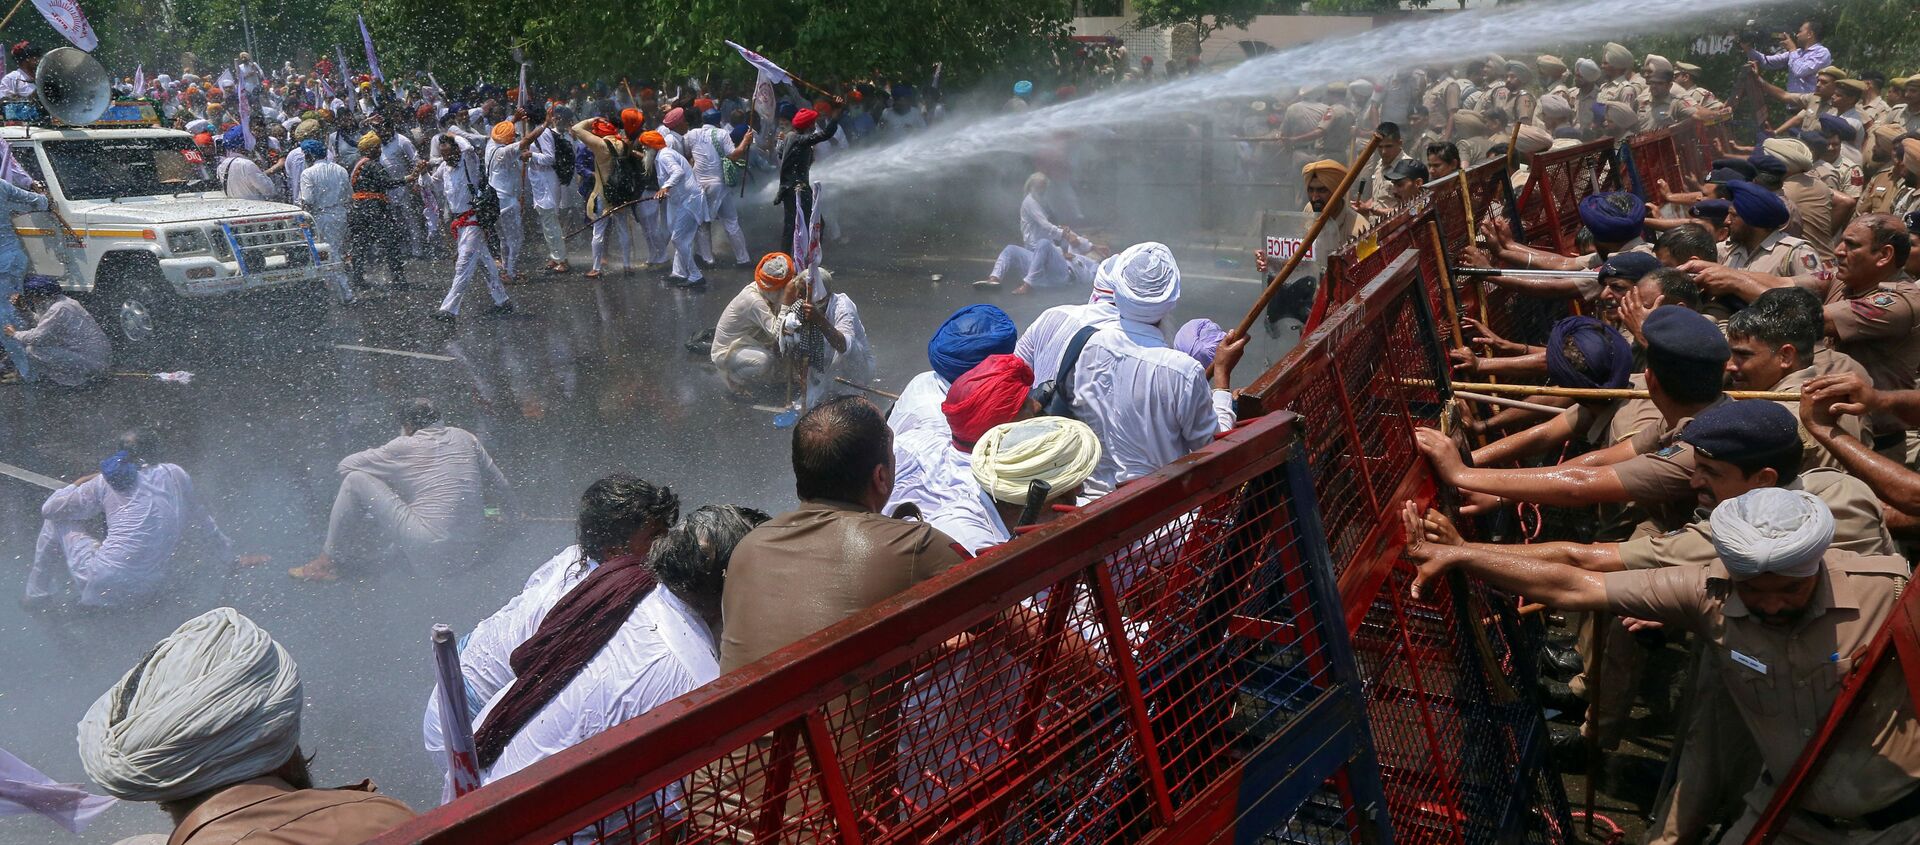 الشرطة الهندية تفض تجمع المتظاهرين في شانديغار، الهند، 14 مايو/ أيار 2019. - سبوتنيك عربي, 1920, 28.11.2020